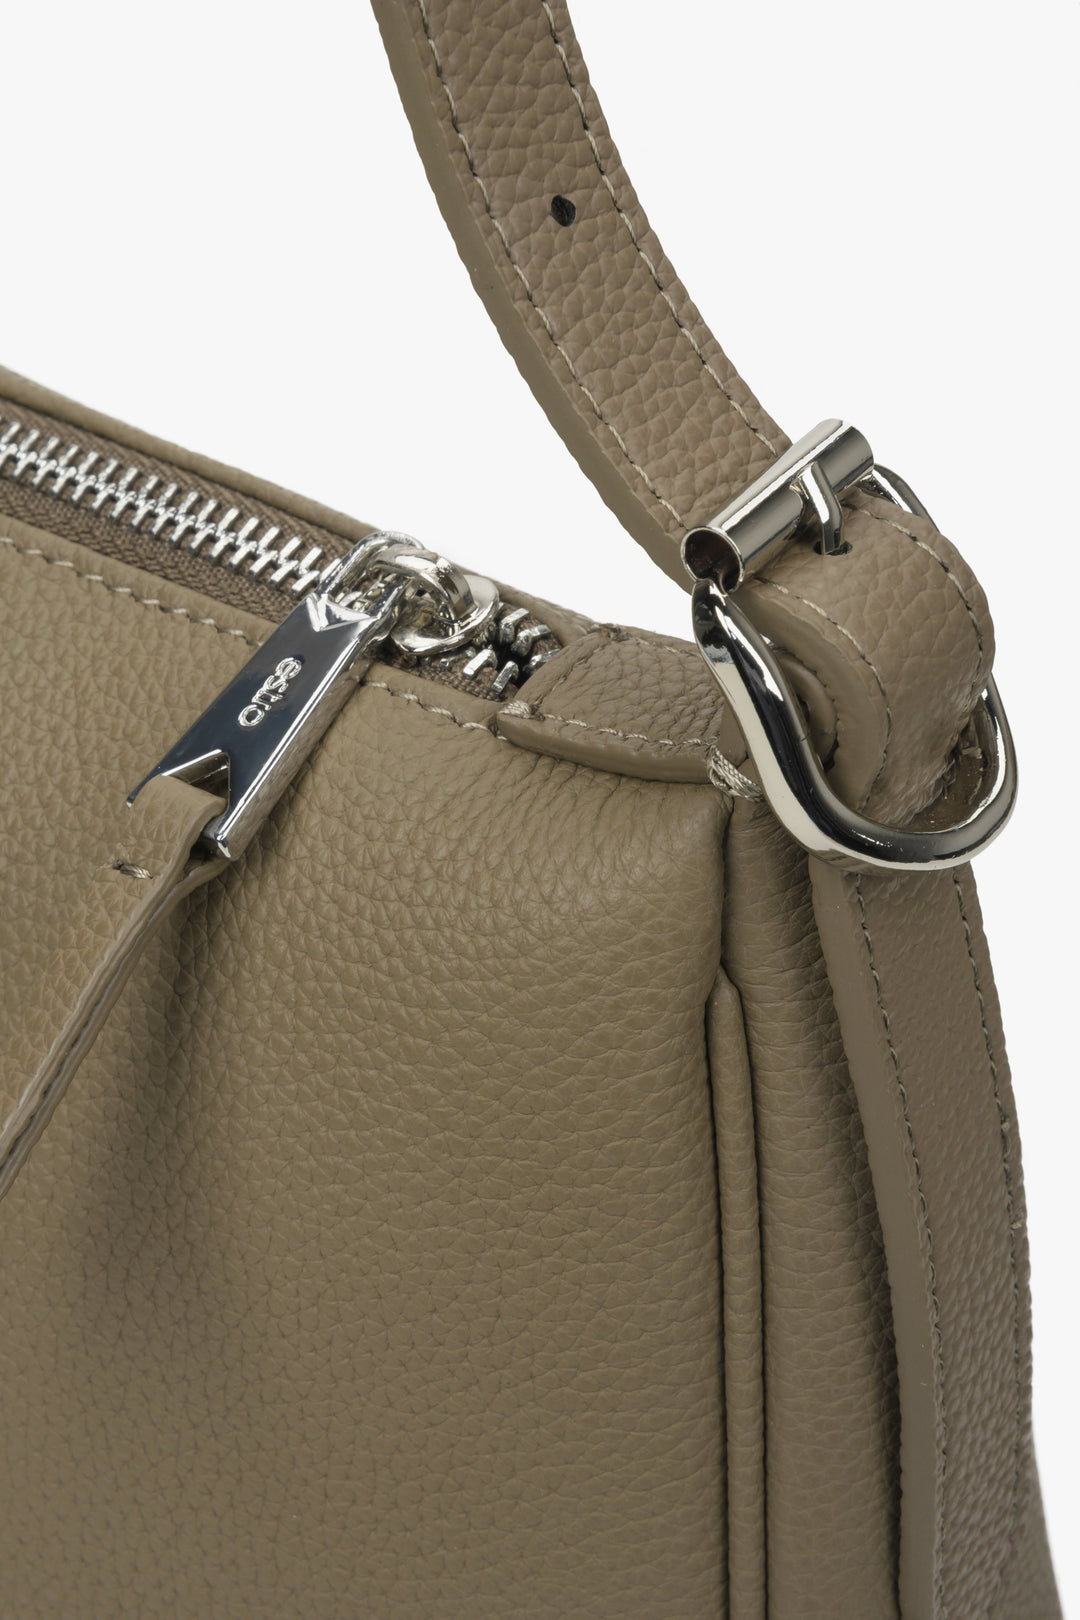 Leather shoulder bag in beige-grey - close-up on the details.